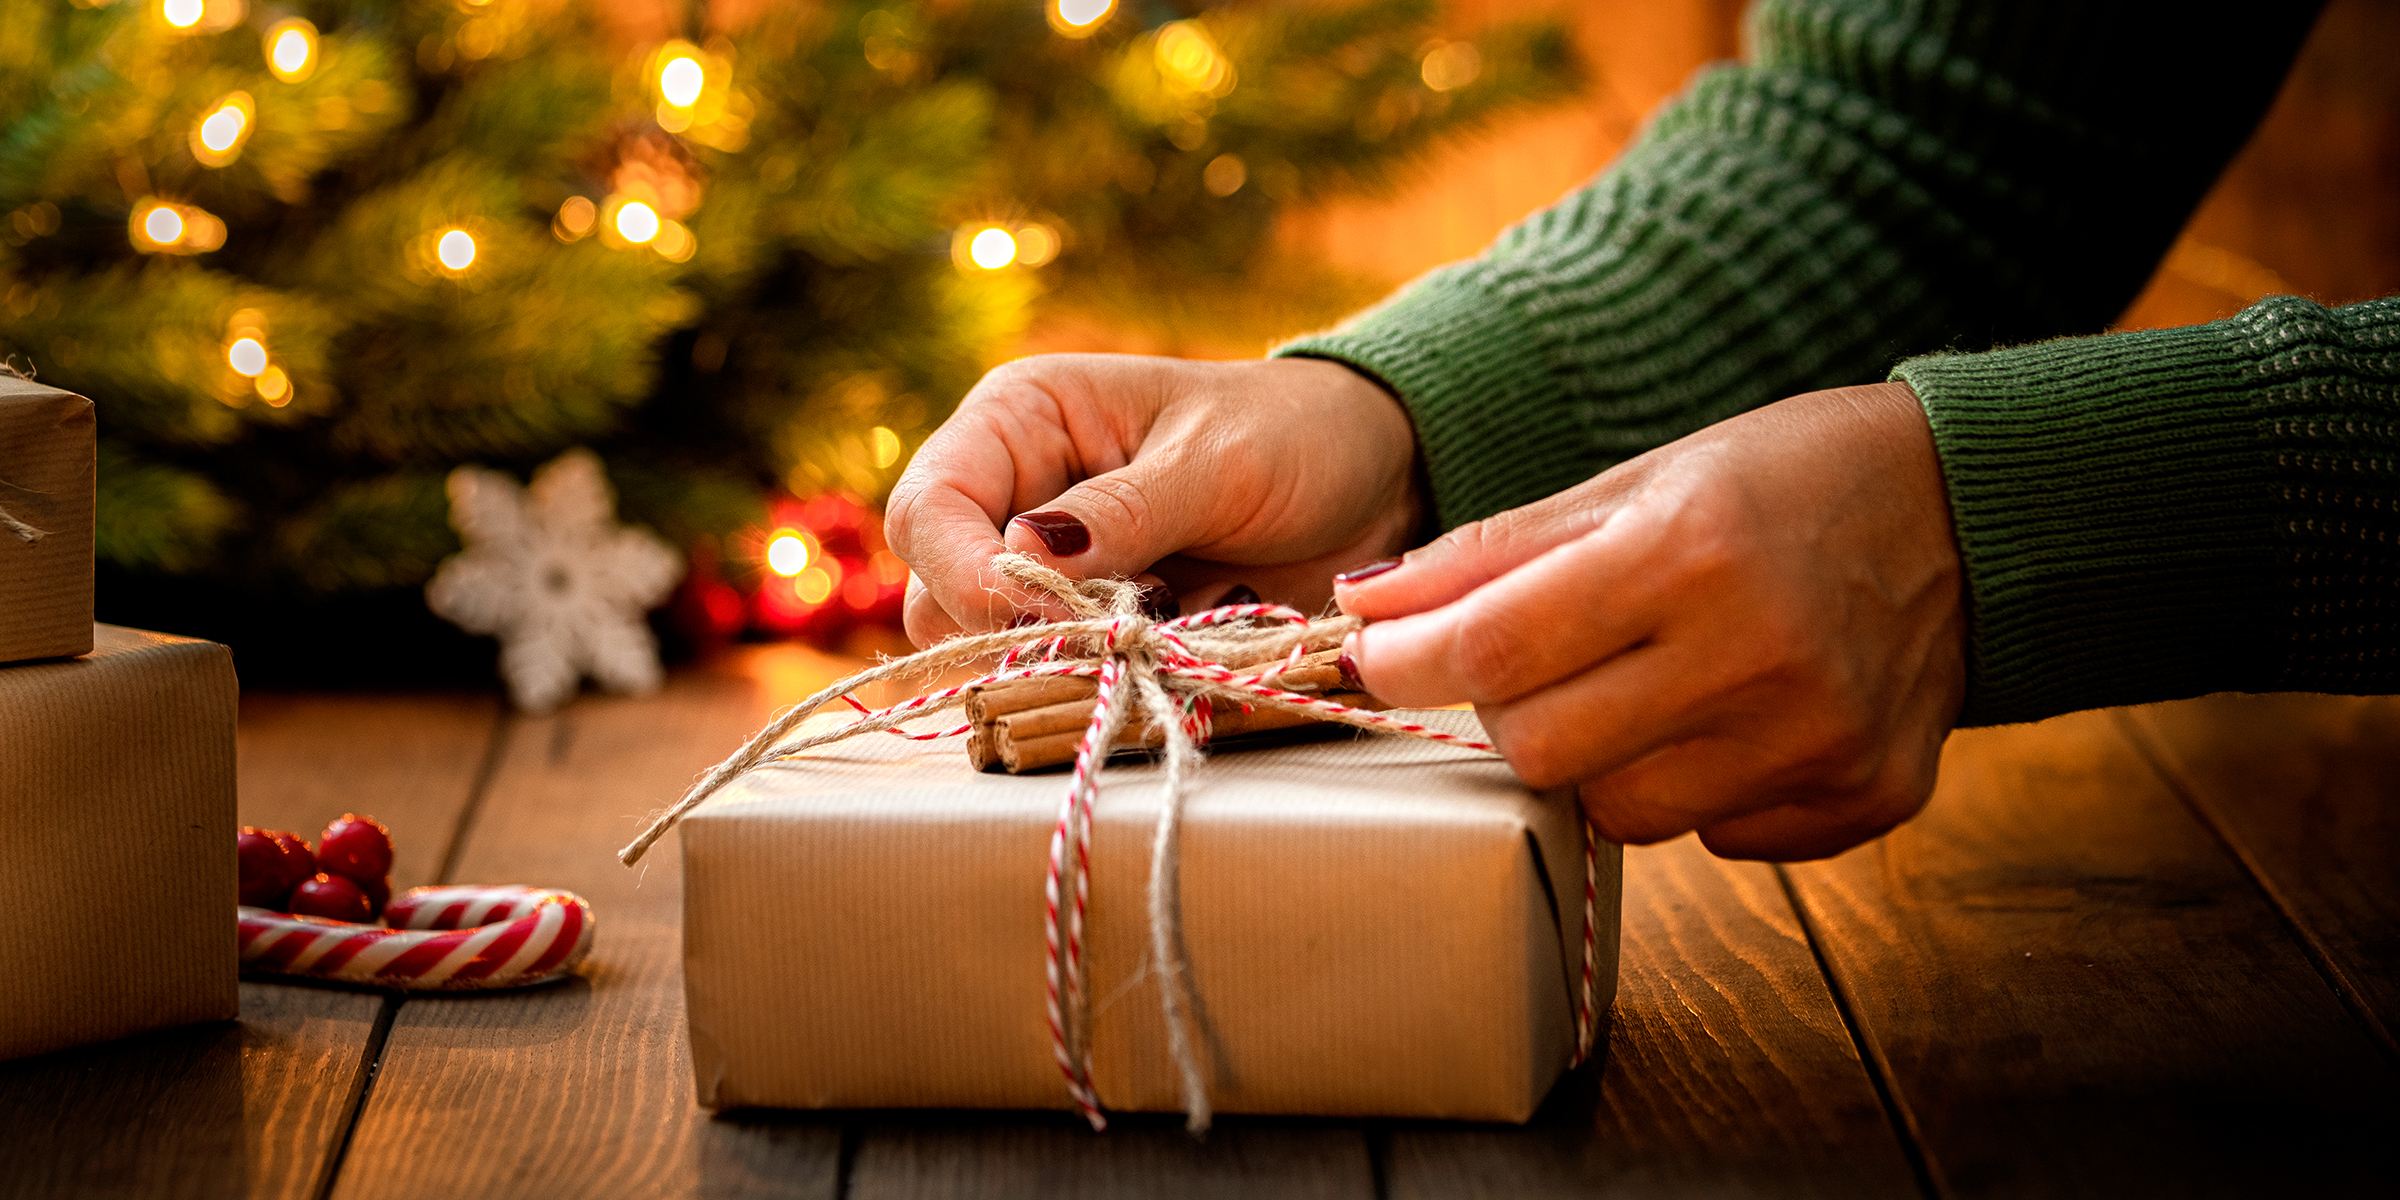 Frau, die ein Weihnachtsgeschenk arrangiert | Quelle: Getty Images